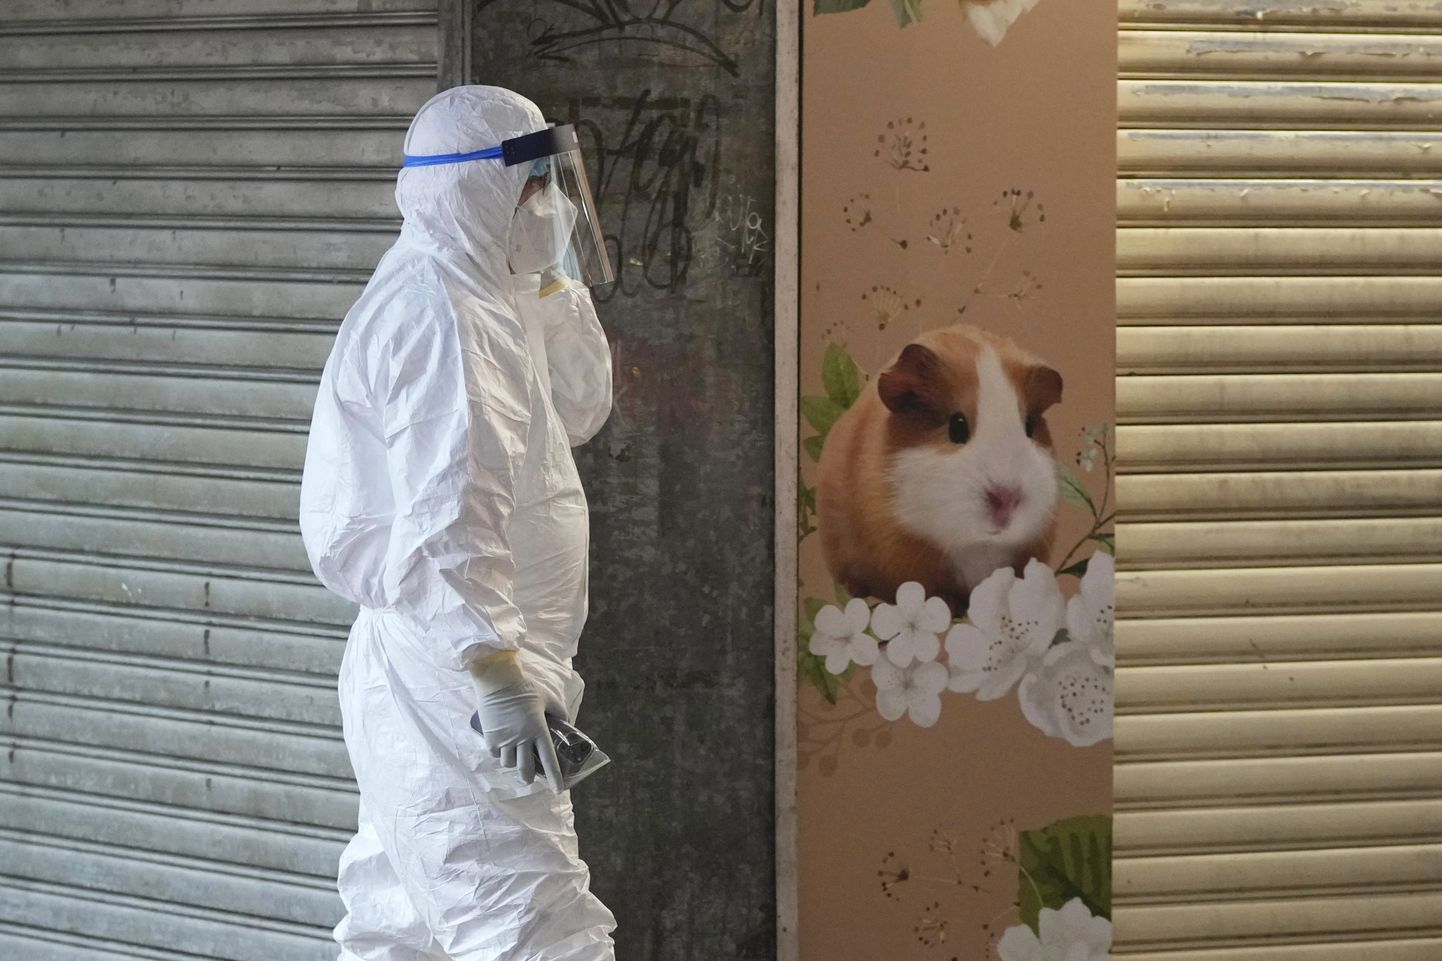 Hongkongi põllumajandus-, kalandus- ja loodushoiu osakonna töötaja lemmikloomapoe juures, mis suleti pärast seda, kui sealsed hamstrid nakatusid koroonaviirusega.